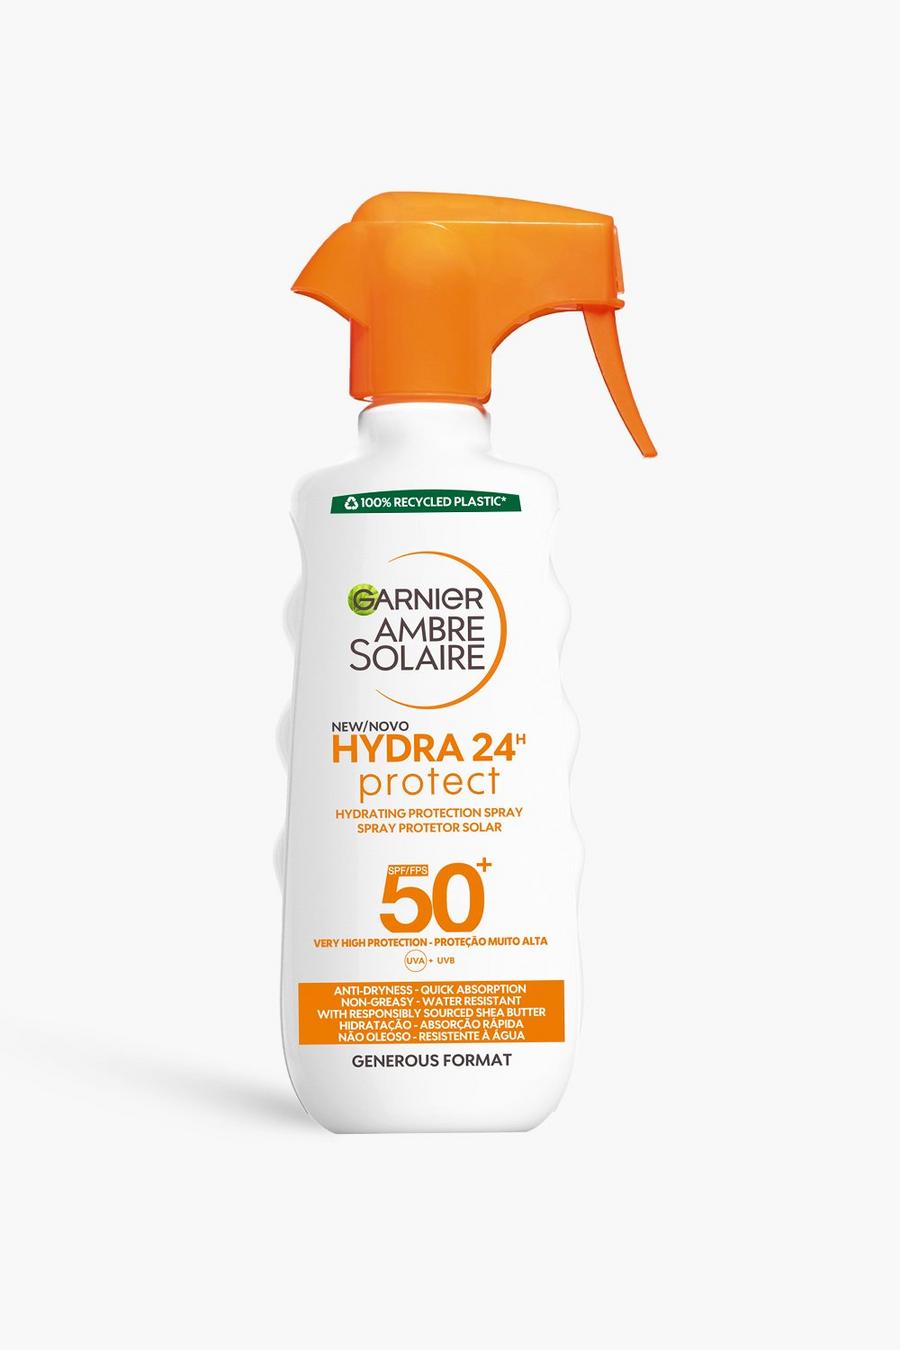 Garnier Ambre Solaire - Crema solare spray idratante, protezione SPF 50 per 24 ore da raggi UVA & UVB, 300 ml (RISPARMI IL 31%), White blanco